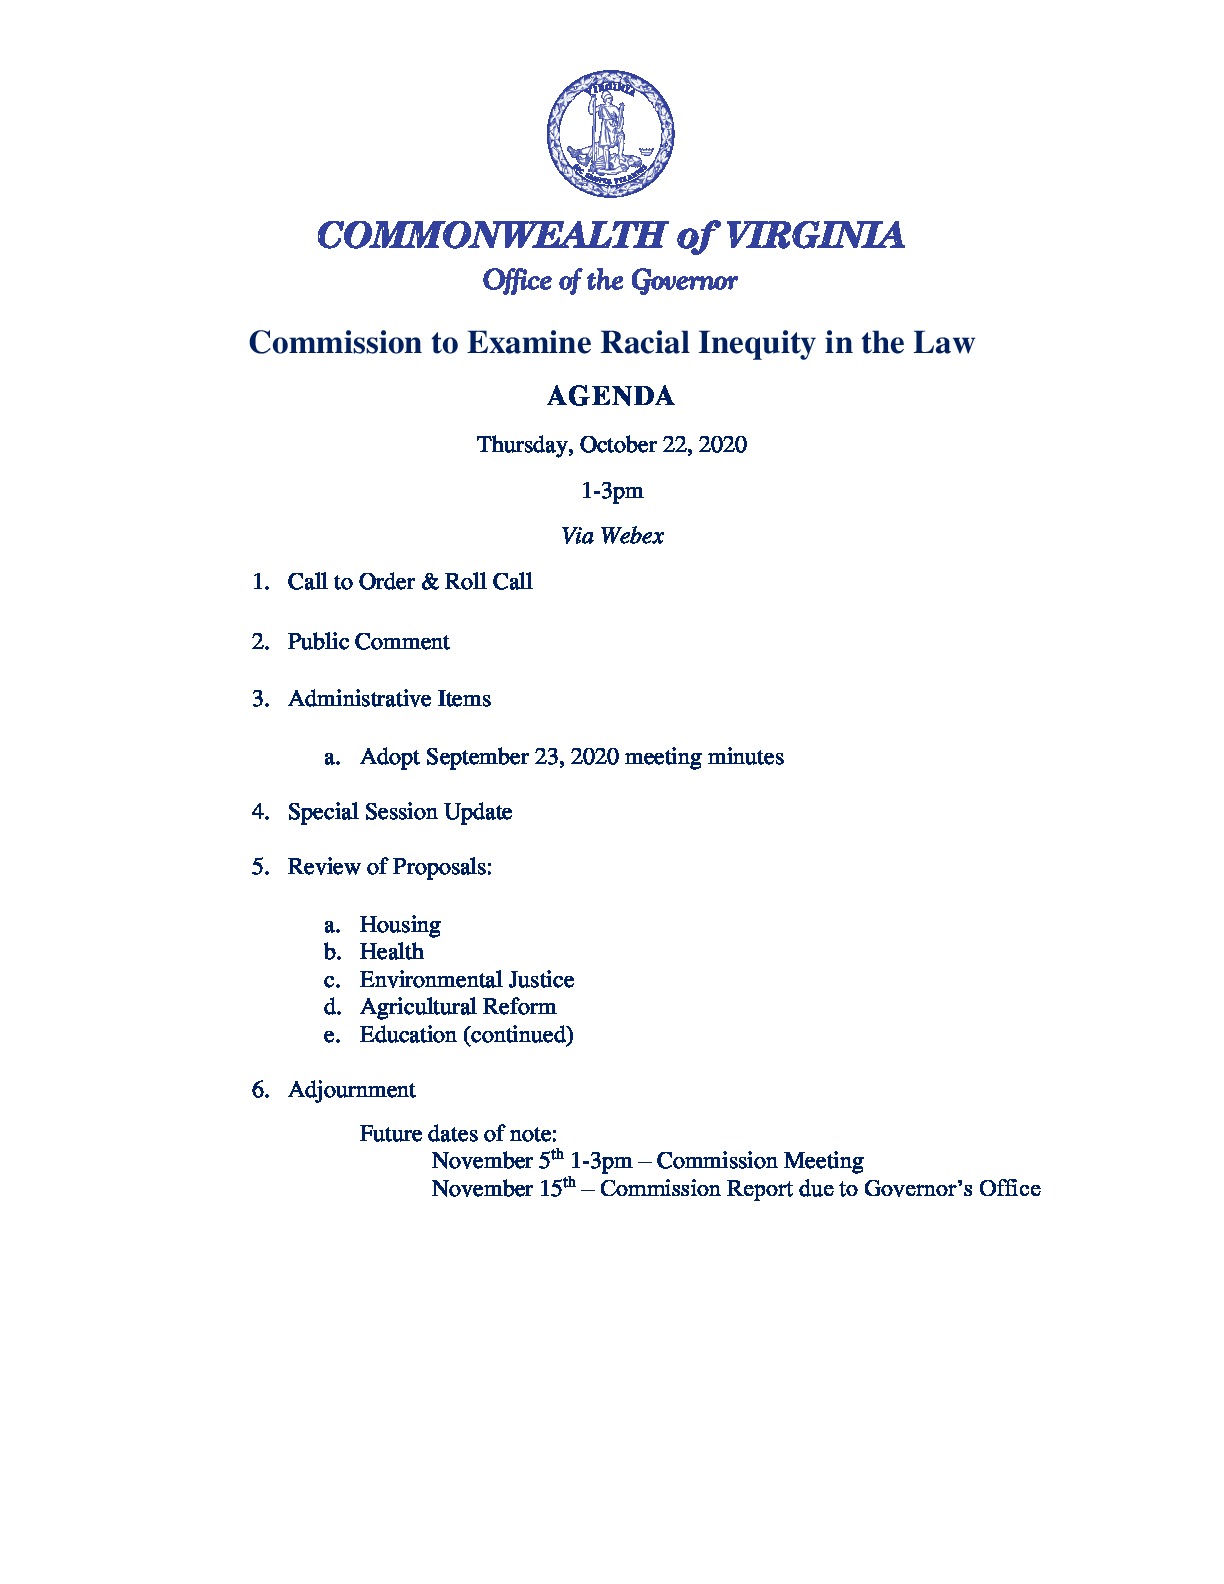 rg32-317_20201022_agenda.PDF